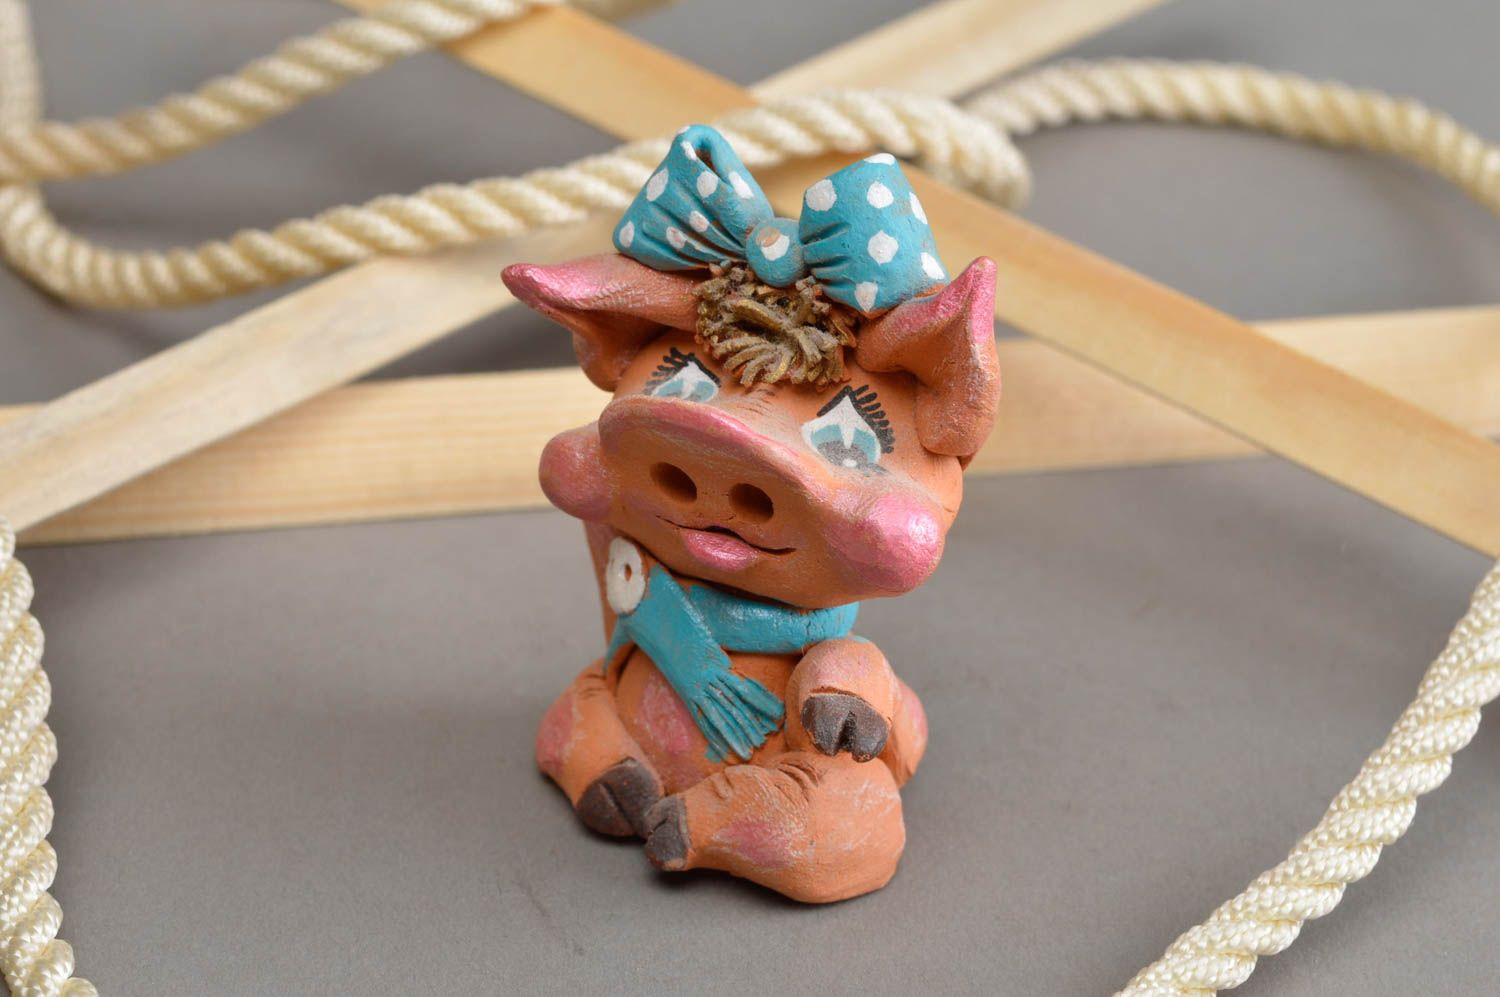 Авторский керамический сувенир ручной работы радостная свинка с голубым бантом фото 1